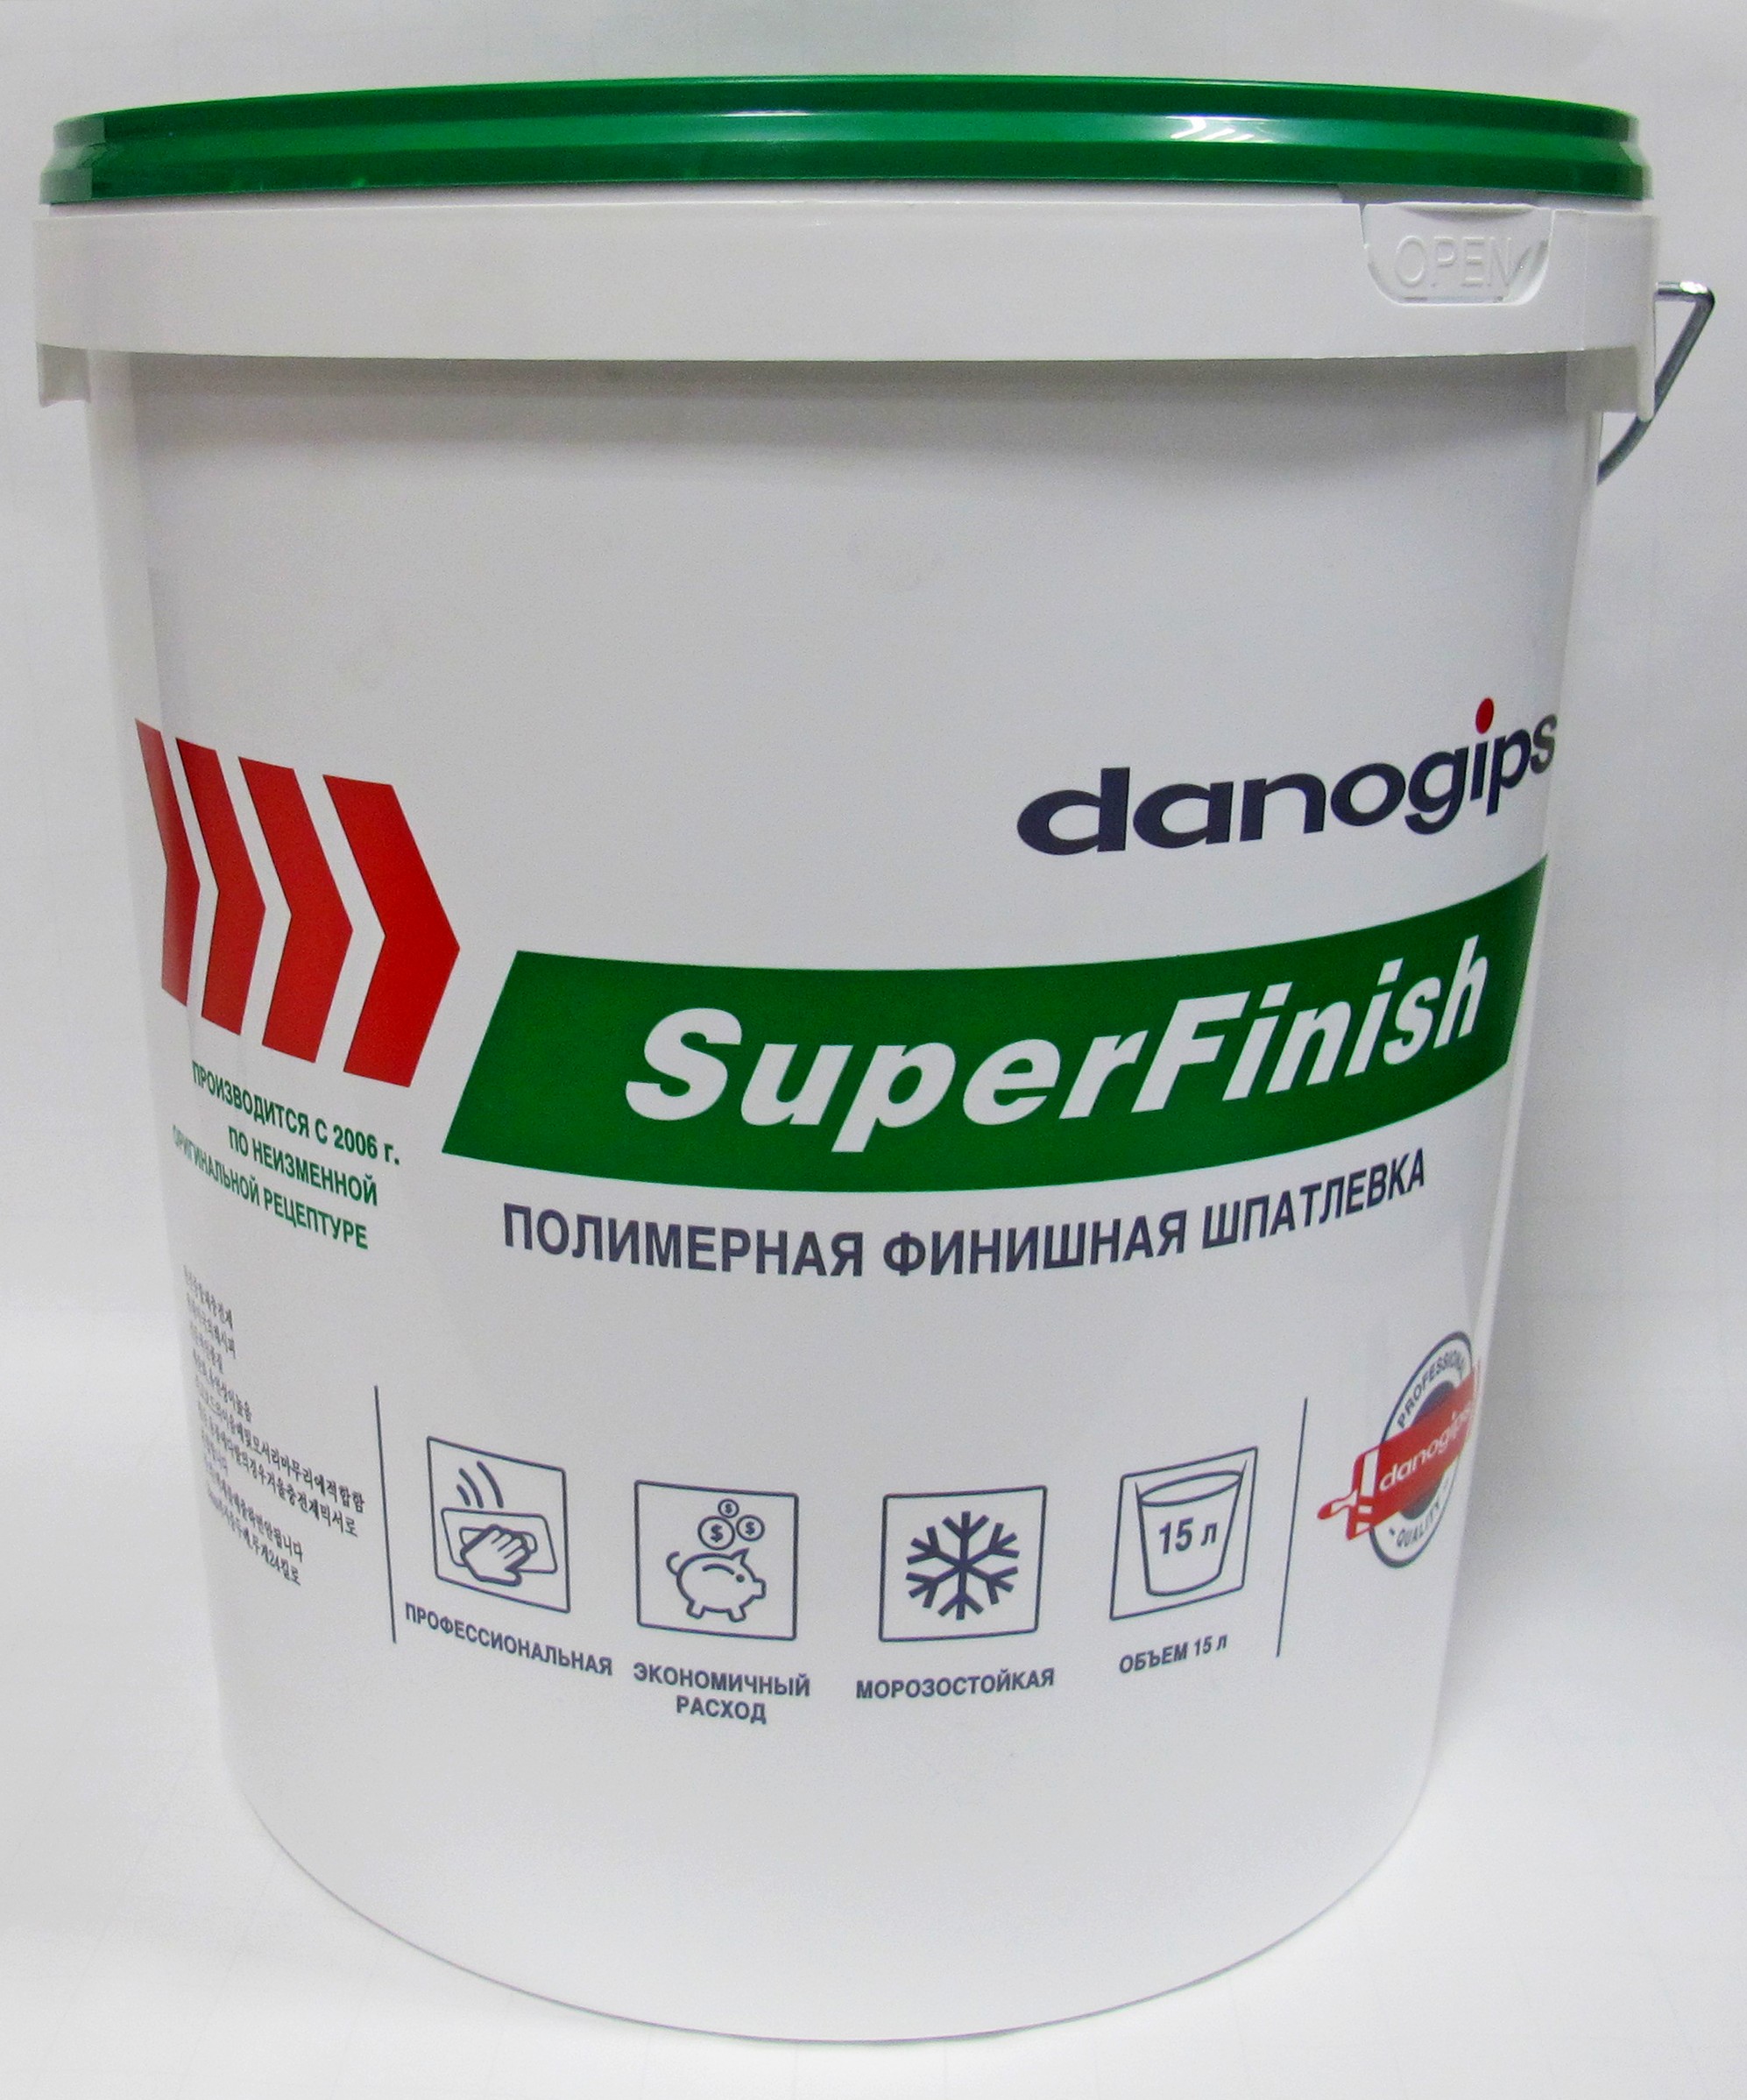 Шпатлевка д/внутр работ финишная danogips SuperFinish 15 л/24 кг 